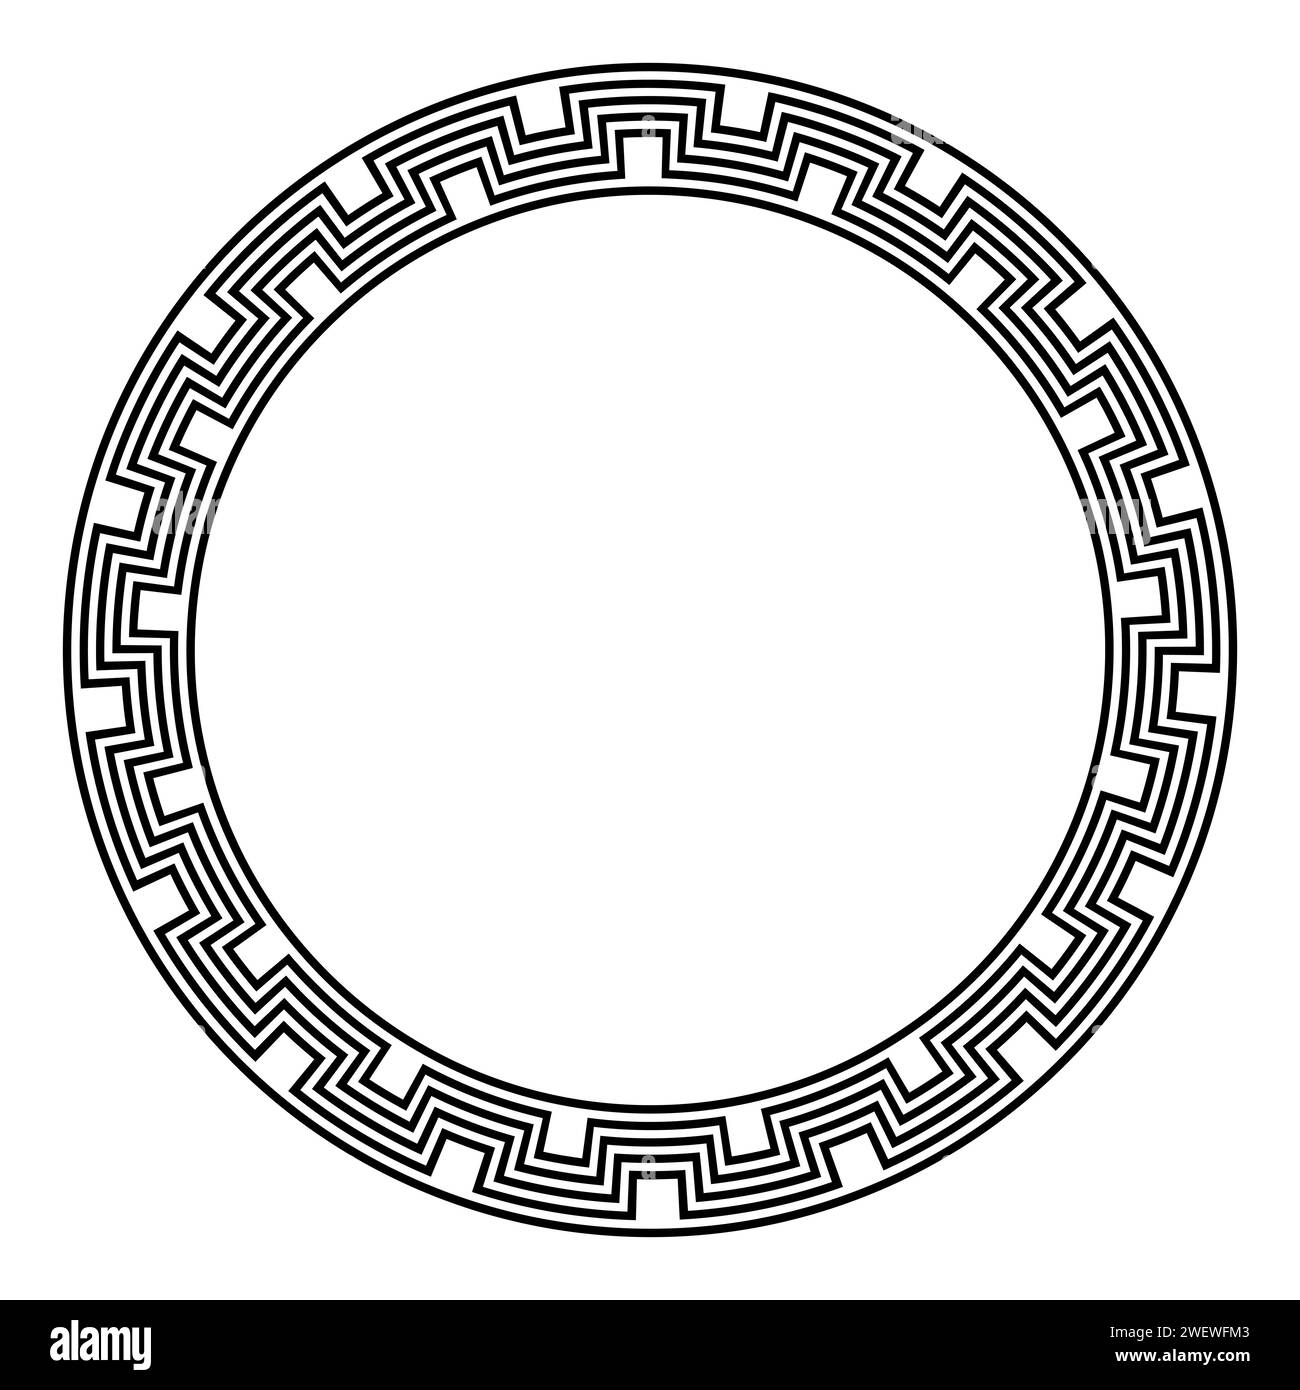 Cadre circulaire à méandres angulaires. Bordure circulaire décorative, dans le style Inca à étapes anciennes, faite d'étapes répétées, parfaitement connectée. Banque D'Images